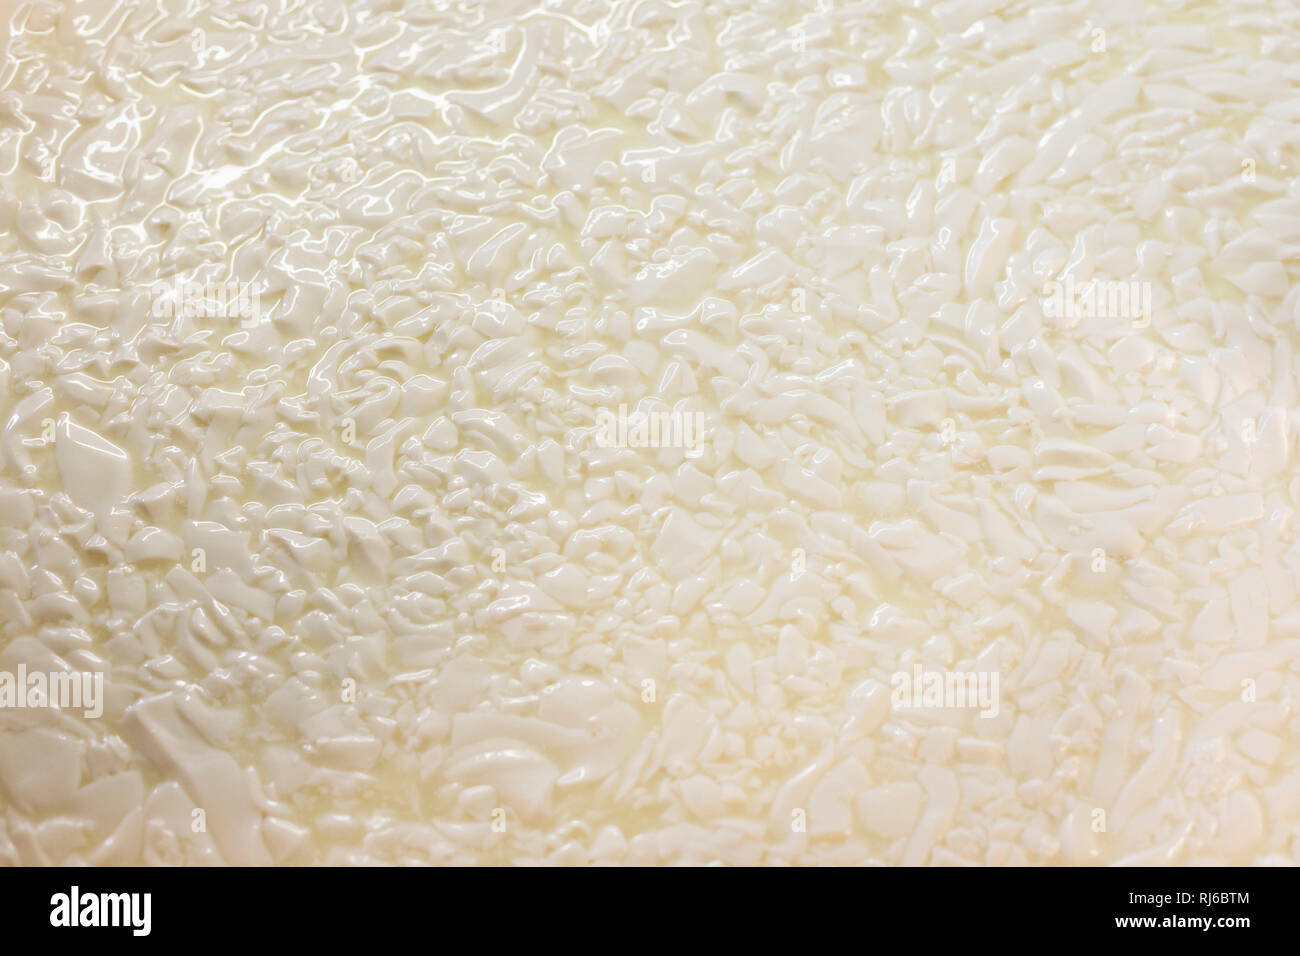 Sennerin verarbeitet frische Milch zu würzigem Alm-Käse, Reportage: Vom Milch kochen, Lab zufügen bis zum Käselaib, der dann im Keller reifen darf, Stock Photo